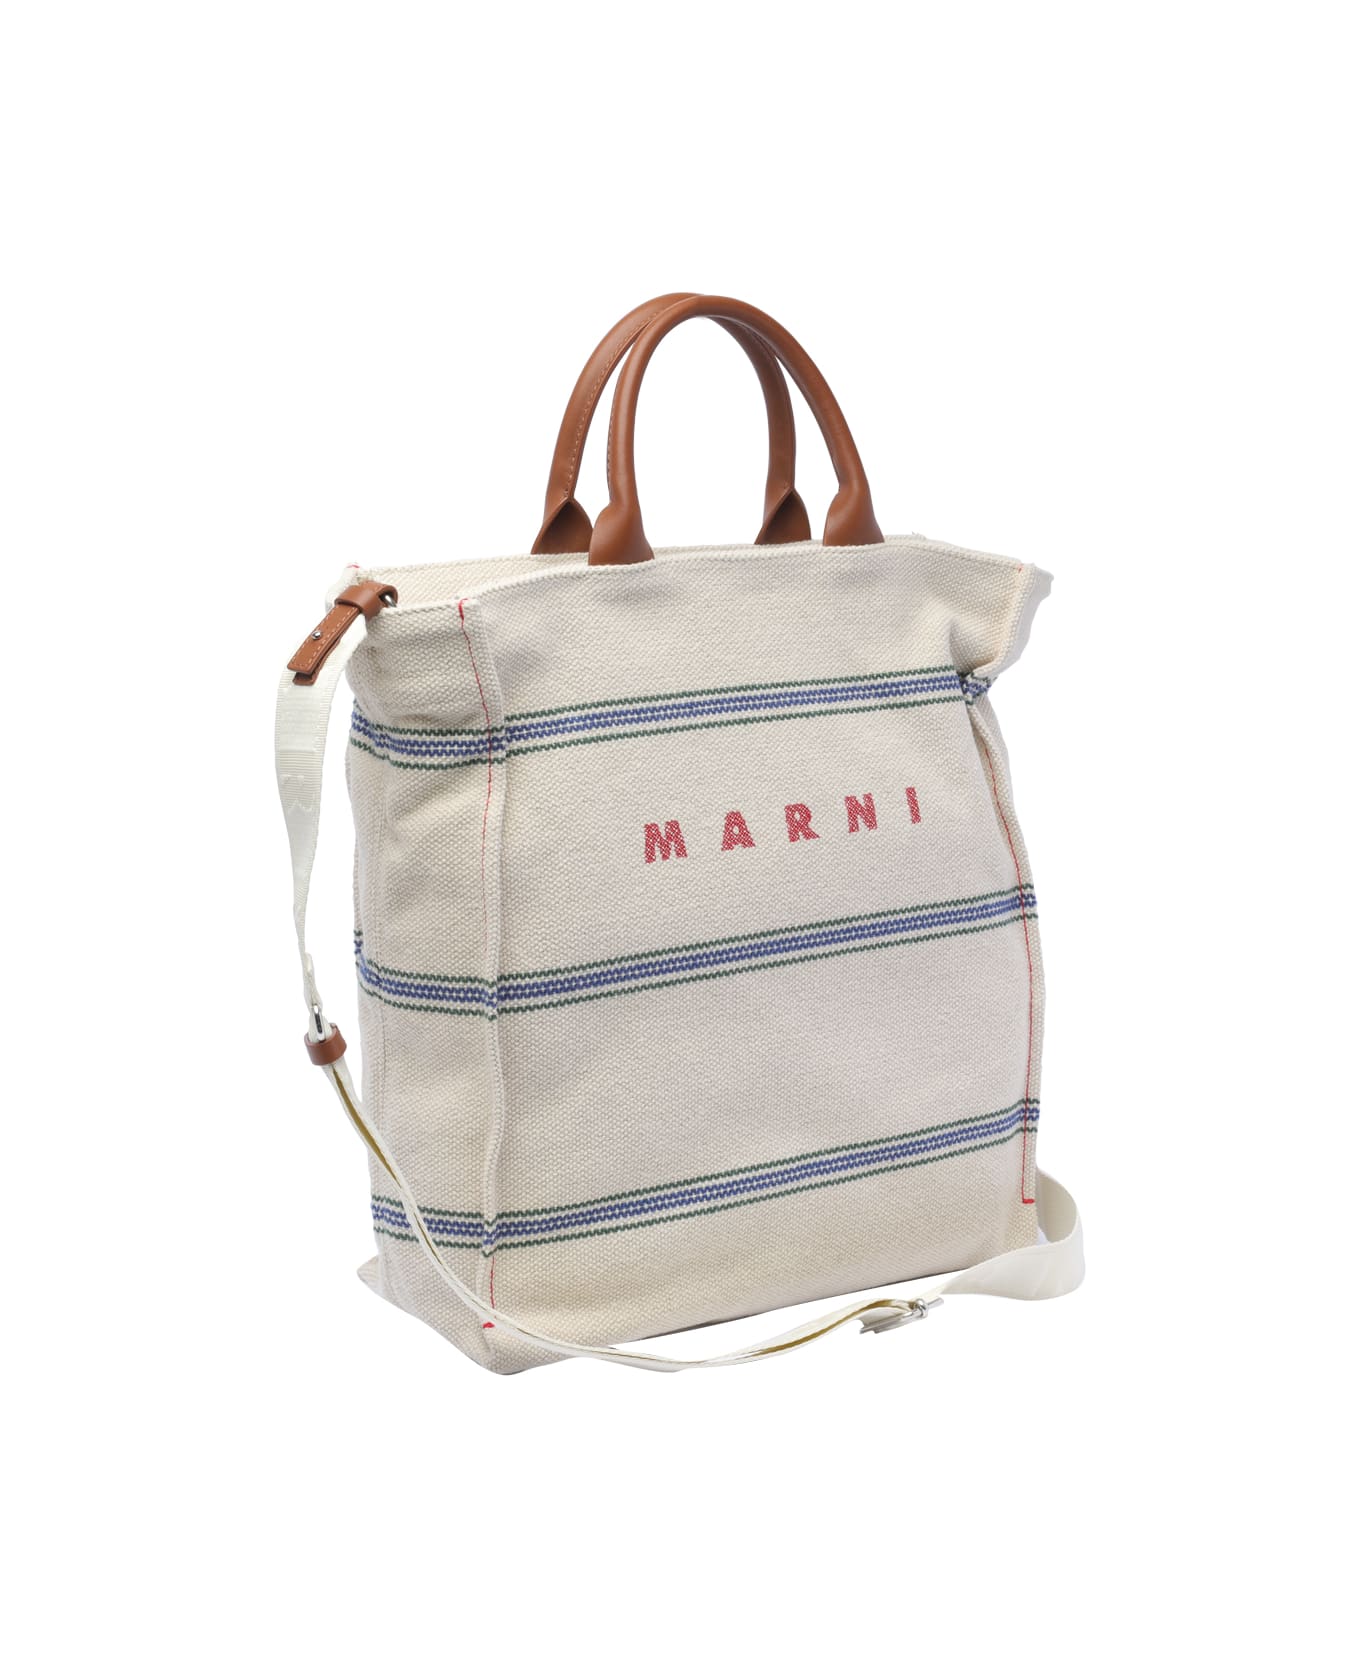 Marni Logo Shopping Bag - Natural